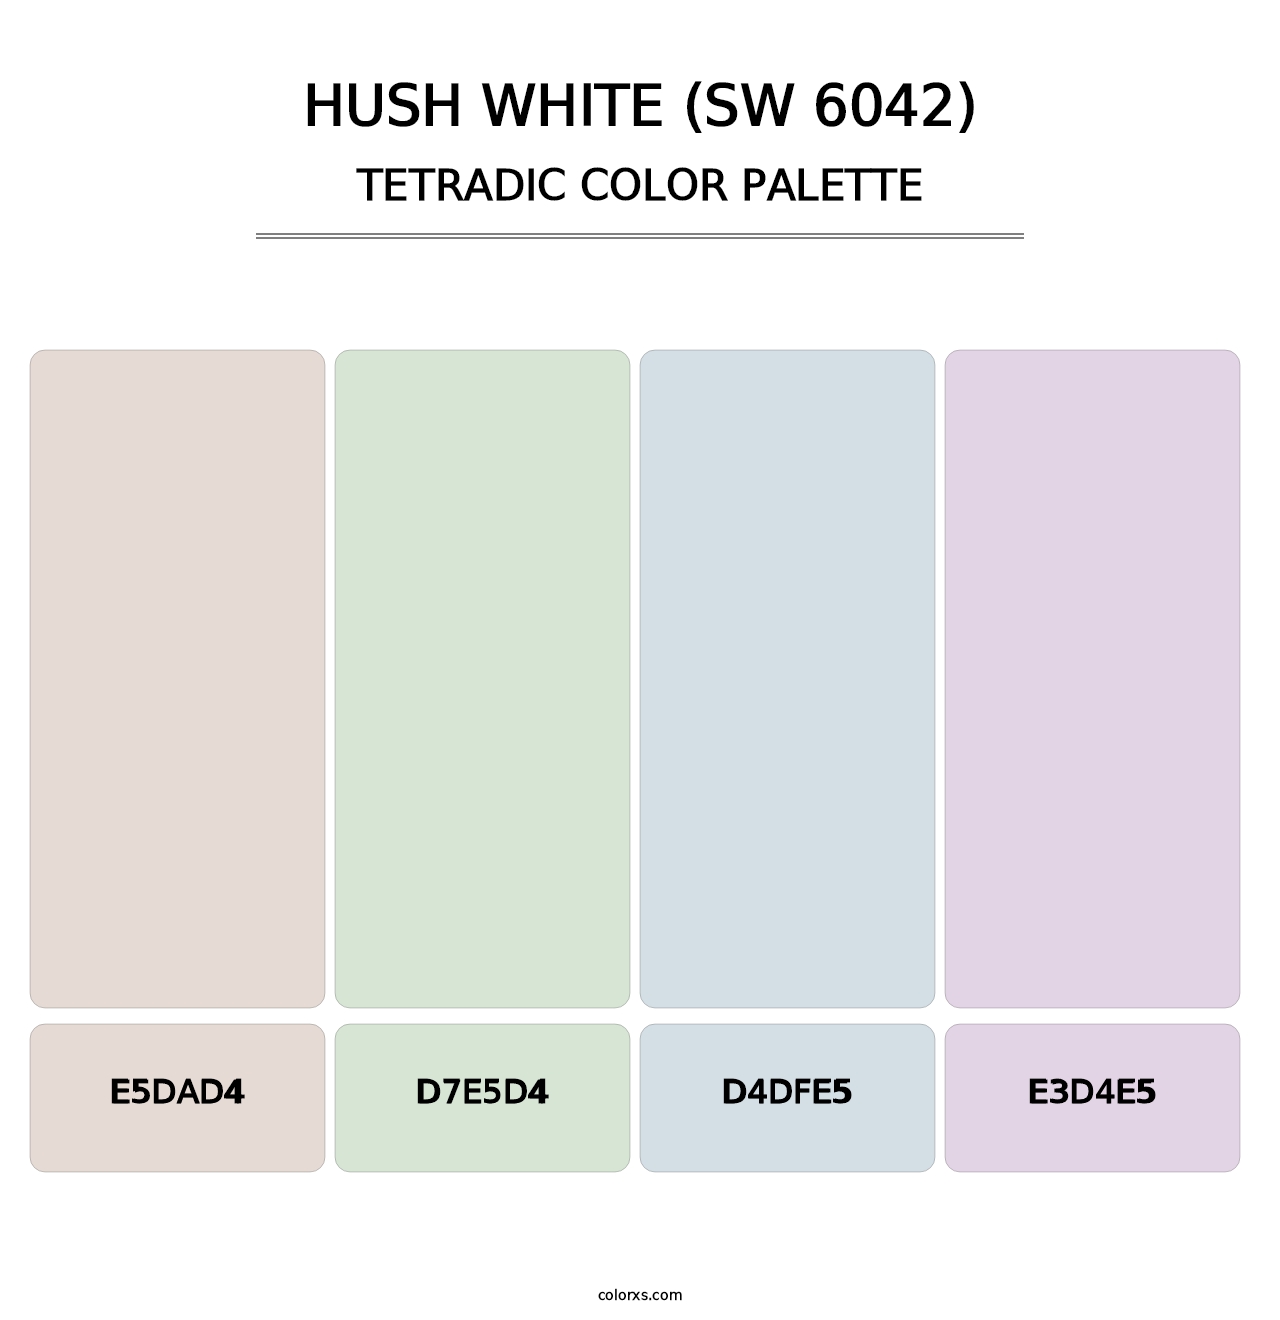 Hush White (SW 6042) - Tetradic Color Palette